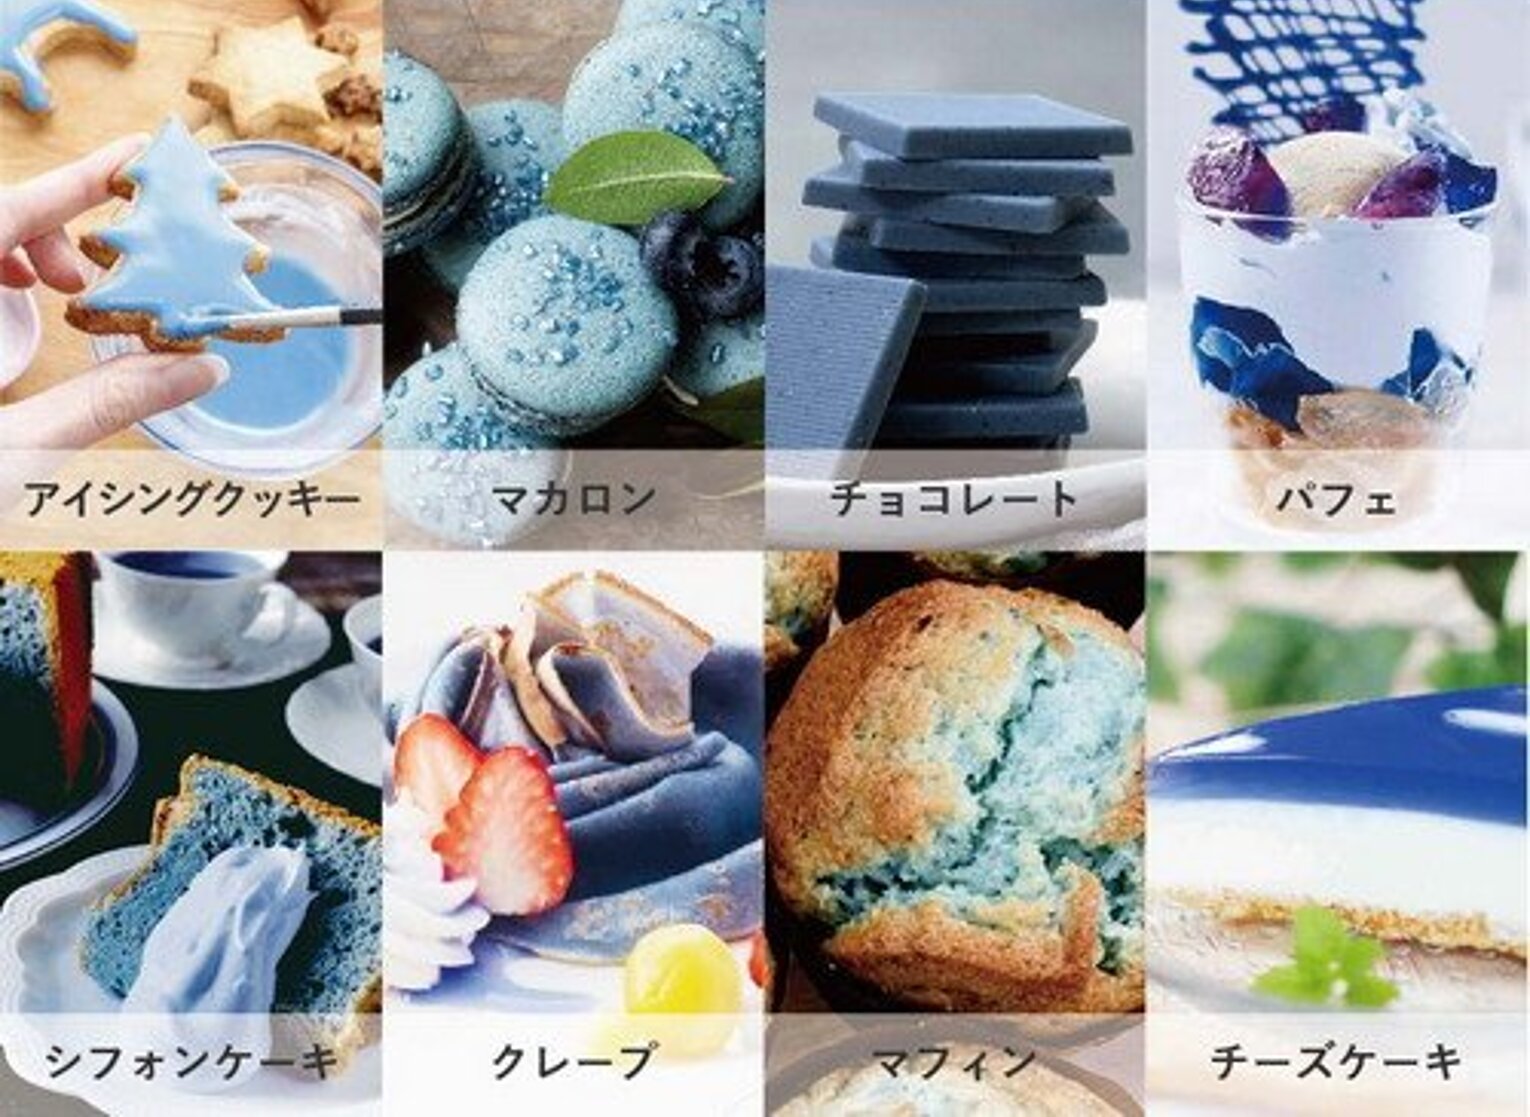 青色の食用色素を入れて作られたお菓子